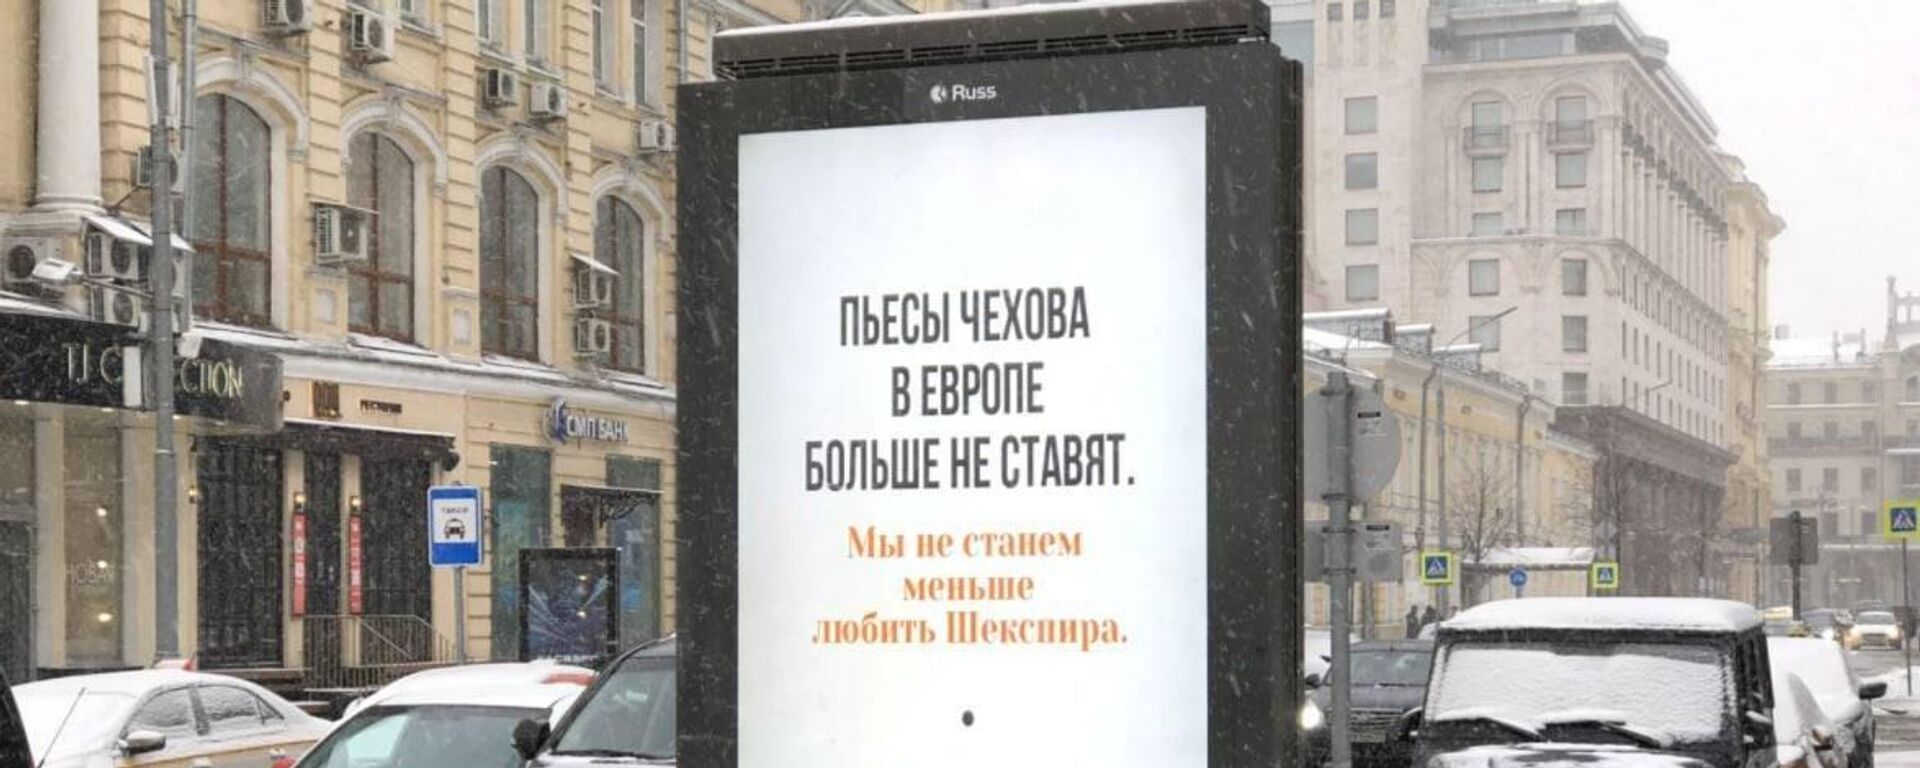 Espectacular en las calles de Moscú sobre el rechazo a autores rusos. - Sputnik Mundo, 1920, 30.03.2022